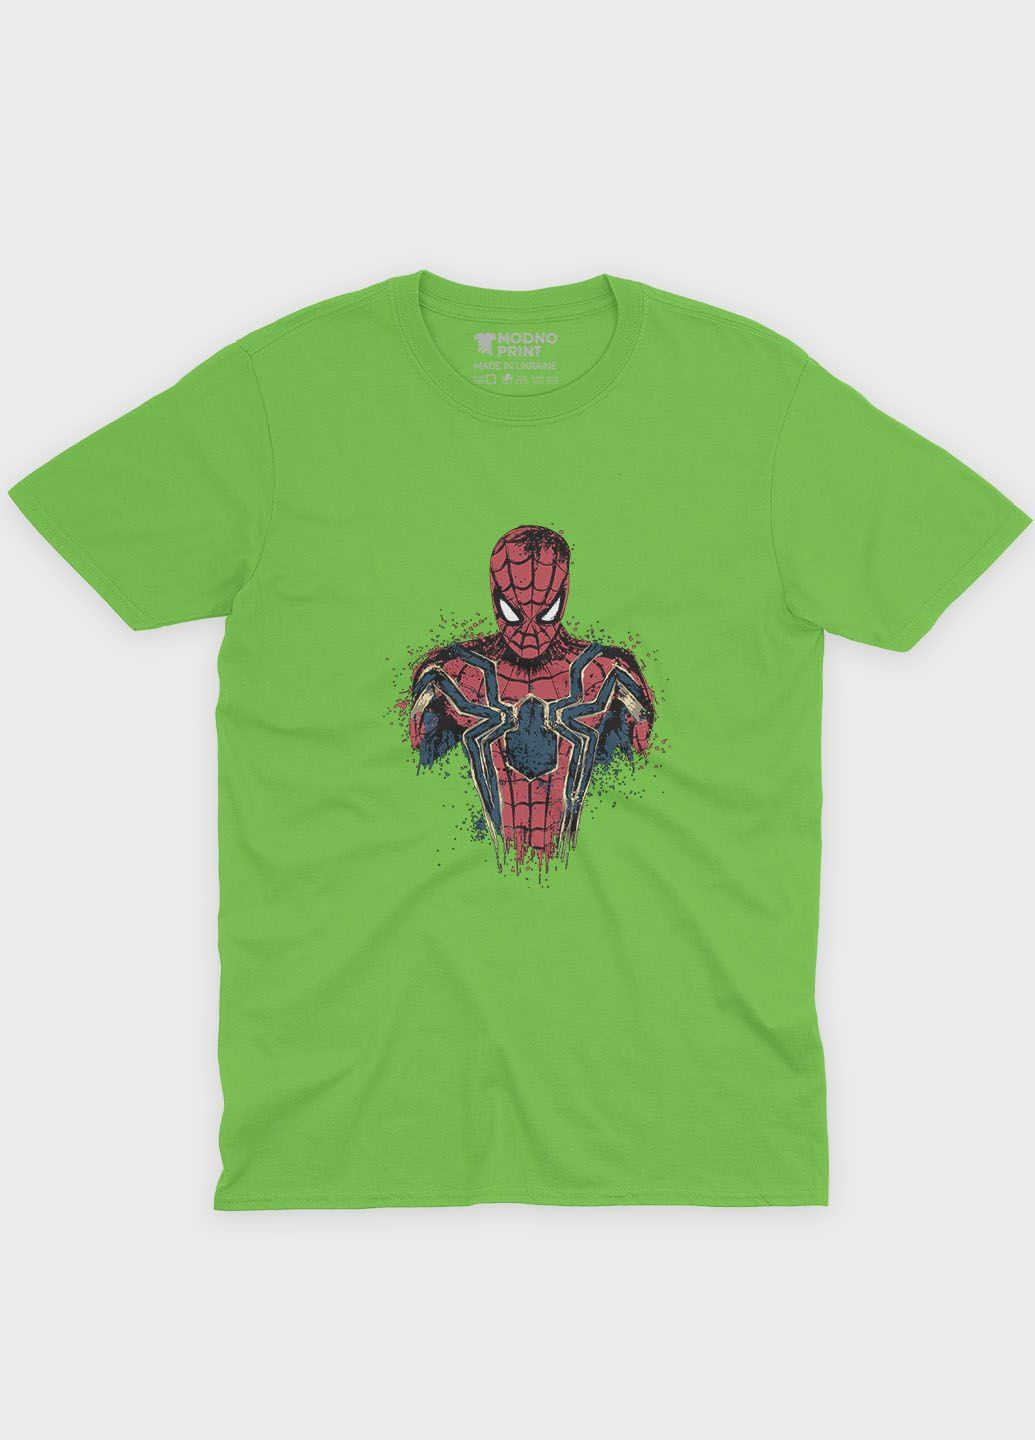 Салатова демісезонна футболка для хлопчика з принтом супергероя - людина-павук (ts001-1-kiw-006-014-066-b) Modno